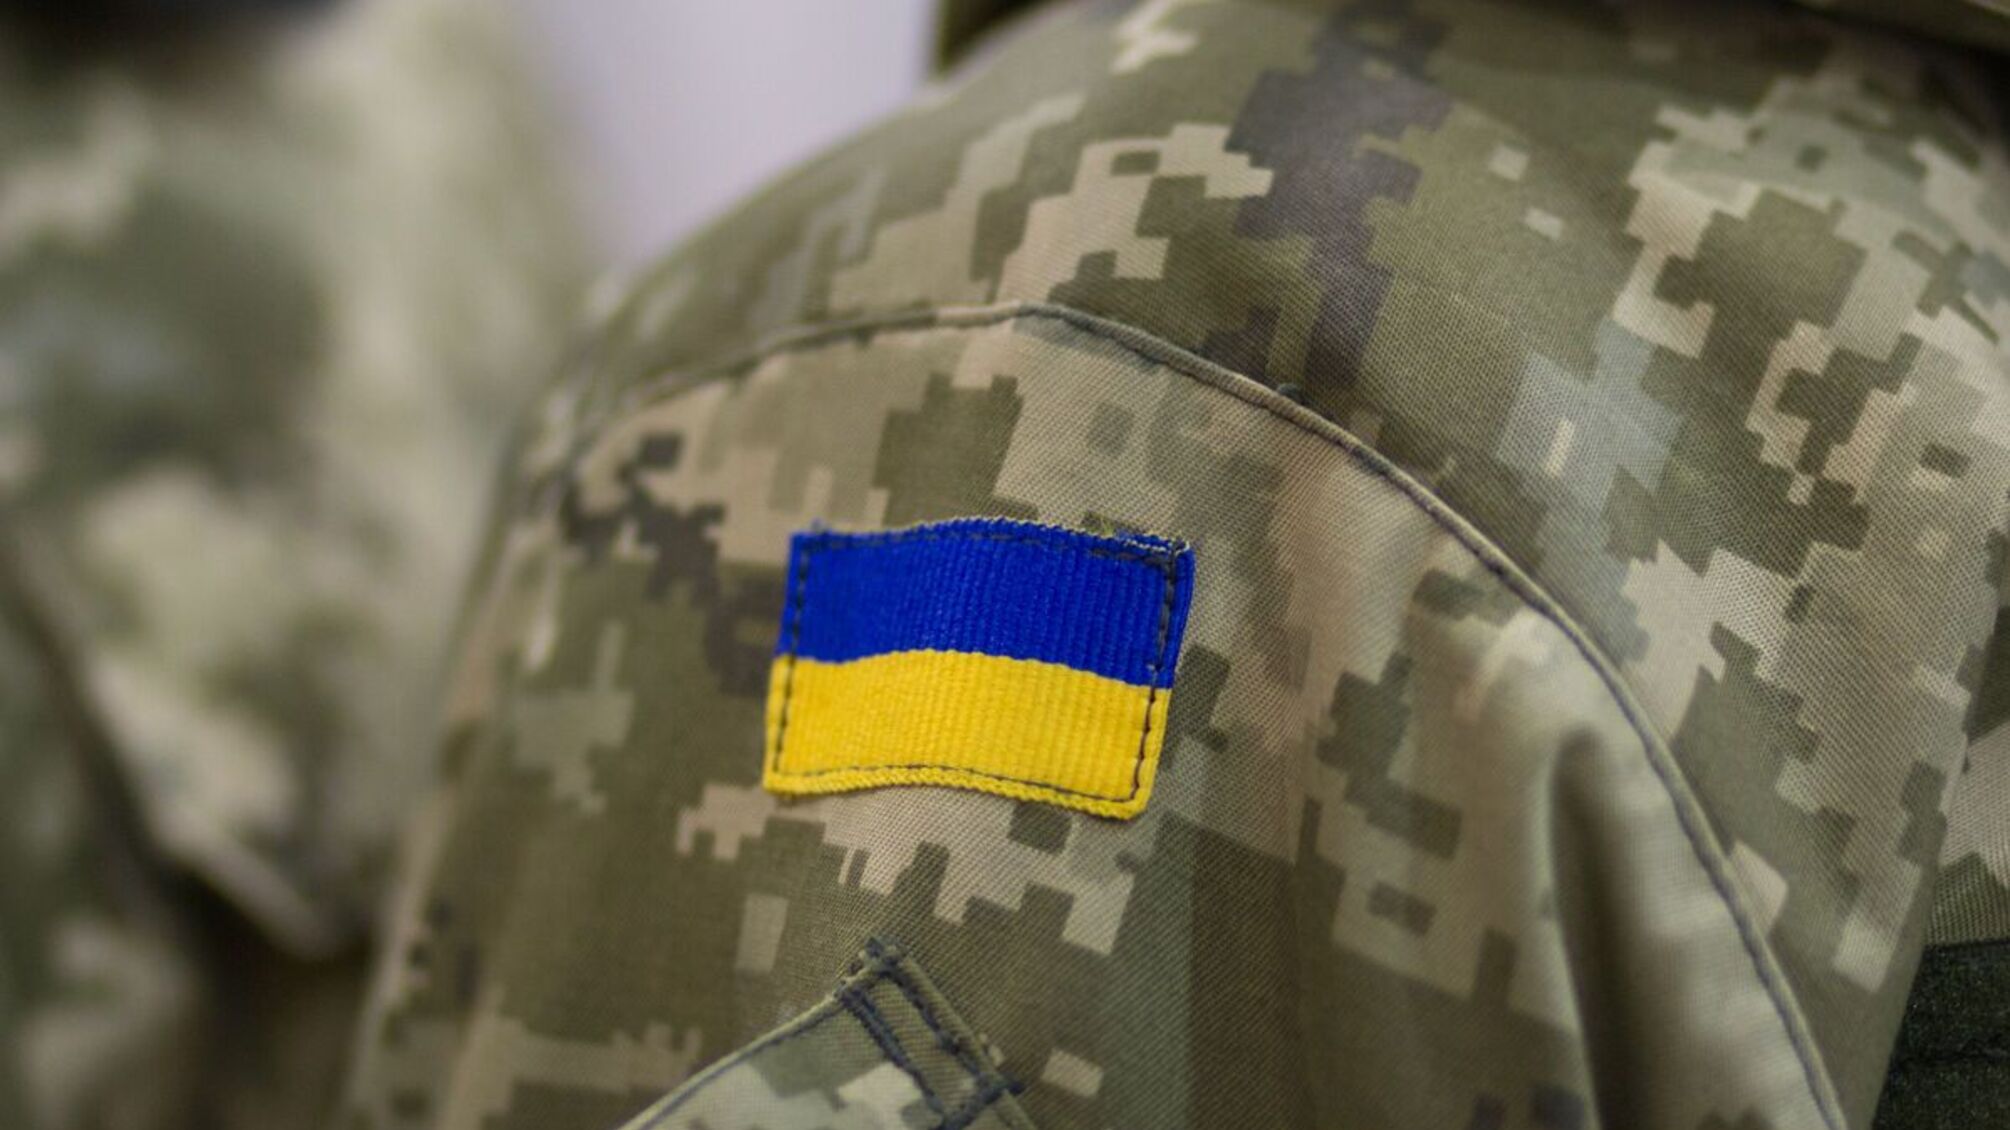 РФ нанесла удар по украинским военным, которые собрались на награждение: погибли более 20 бойцов, - УП